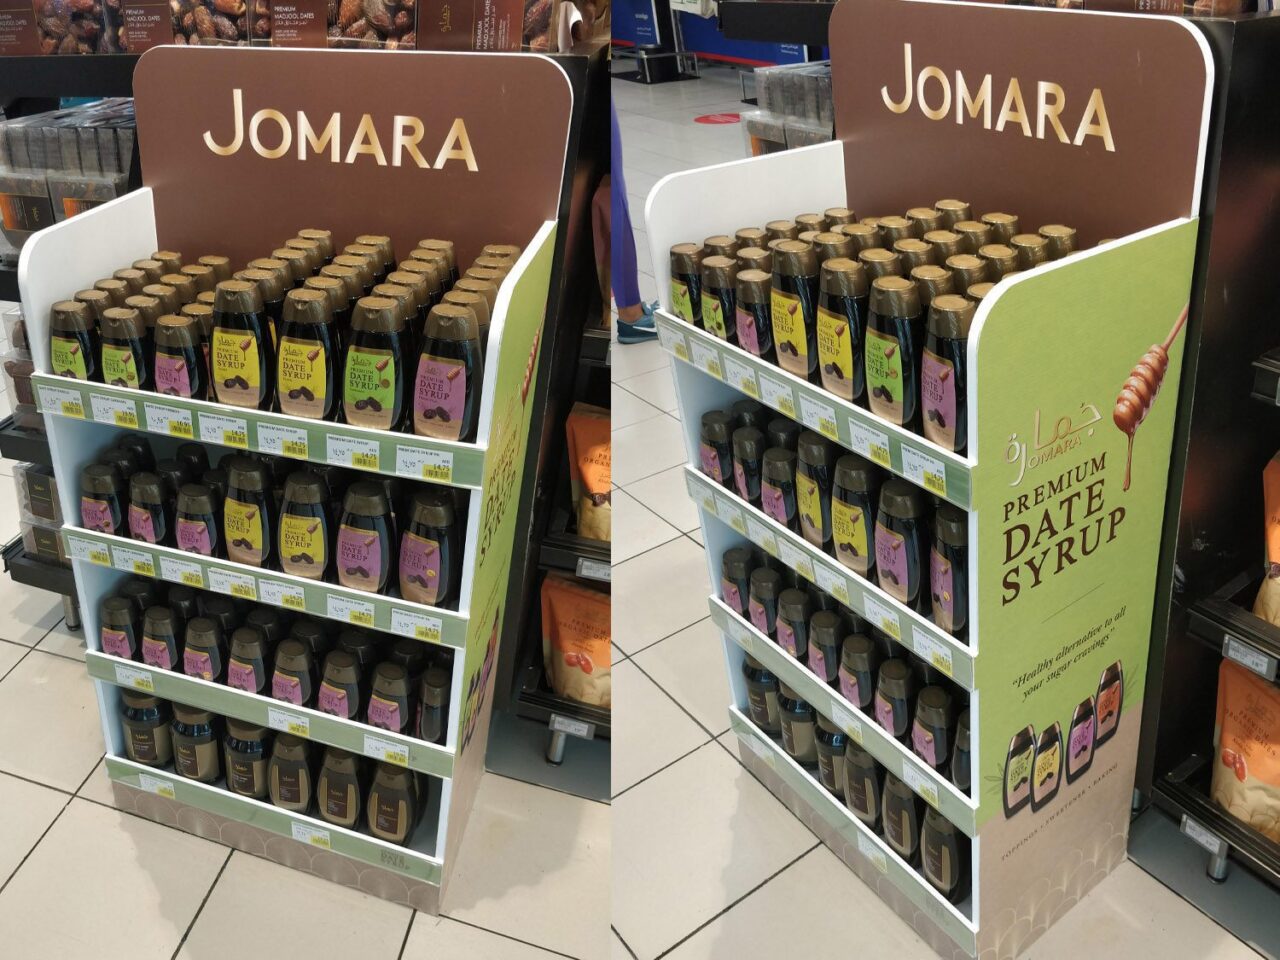 jomara dates in market